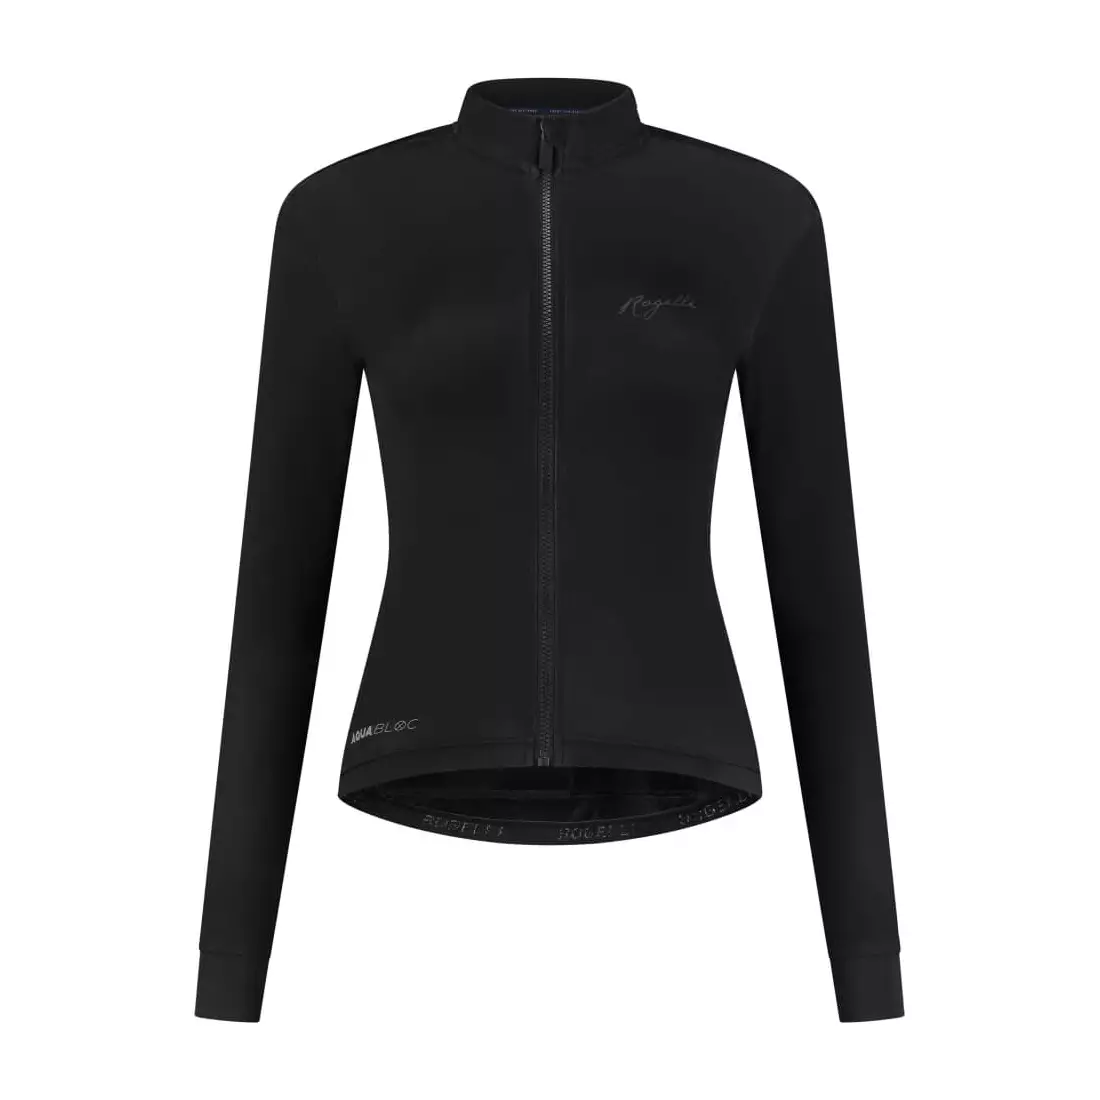 Rogelli DISTANCE dámská zateplená cyklistická bunda černá